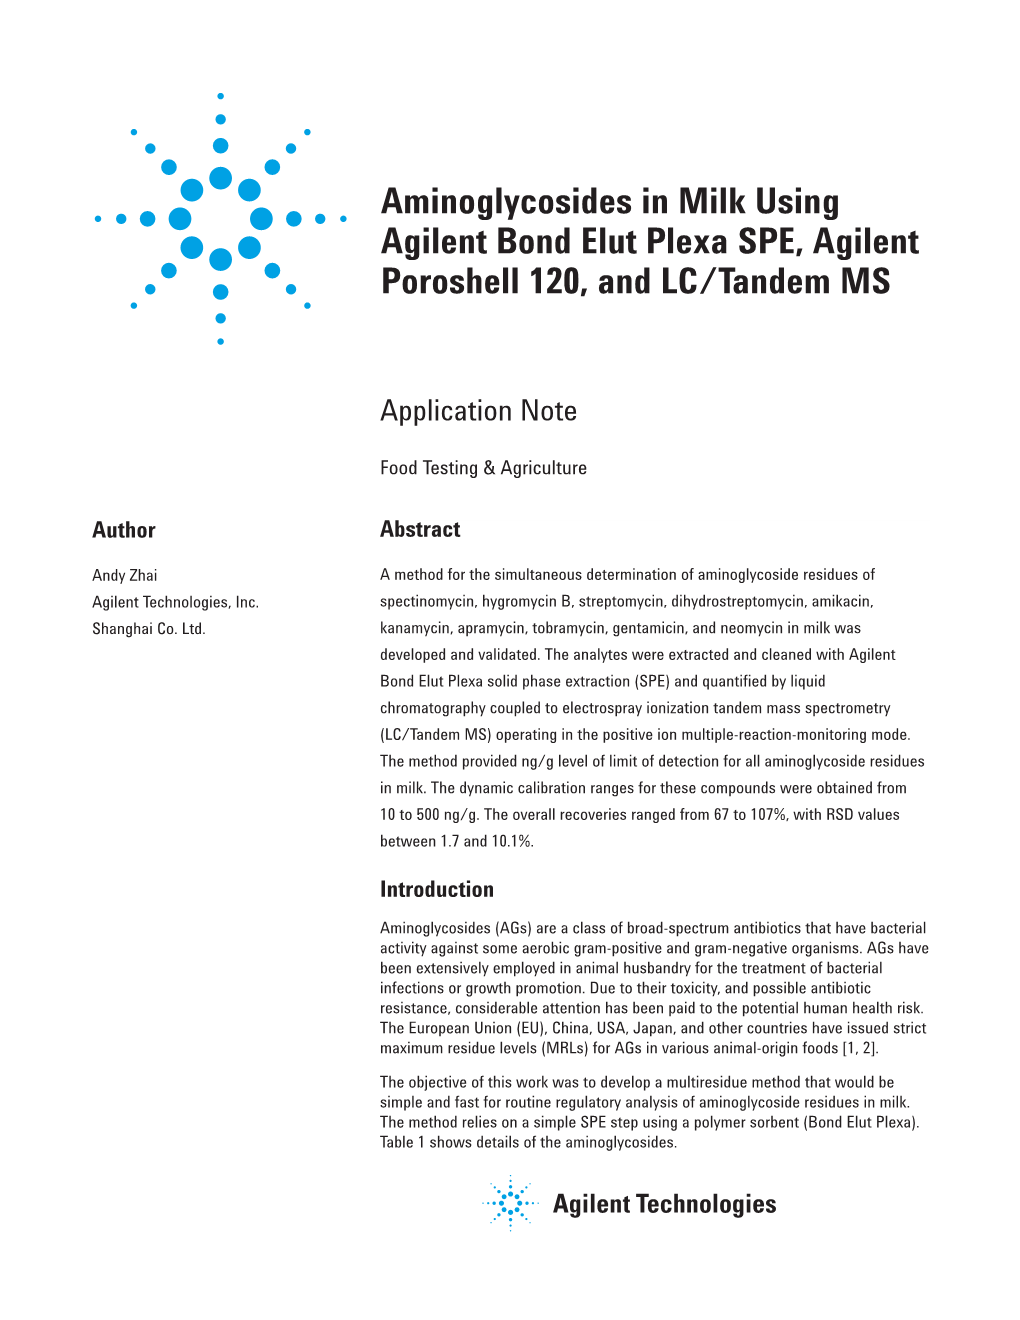 Aminoglycosides in Milk Using Agilent Bond Elut Plexa SPE, Agilent Poroshell 120, and LC/Tandem MS